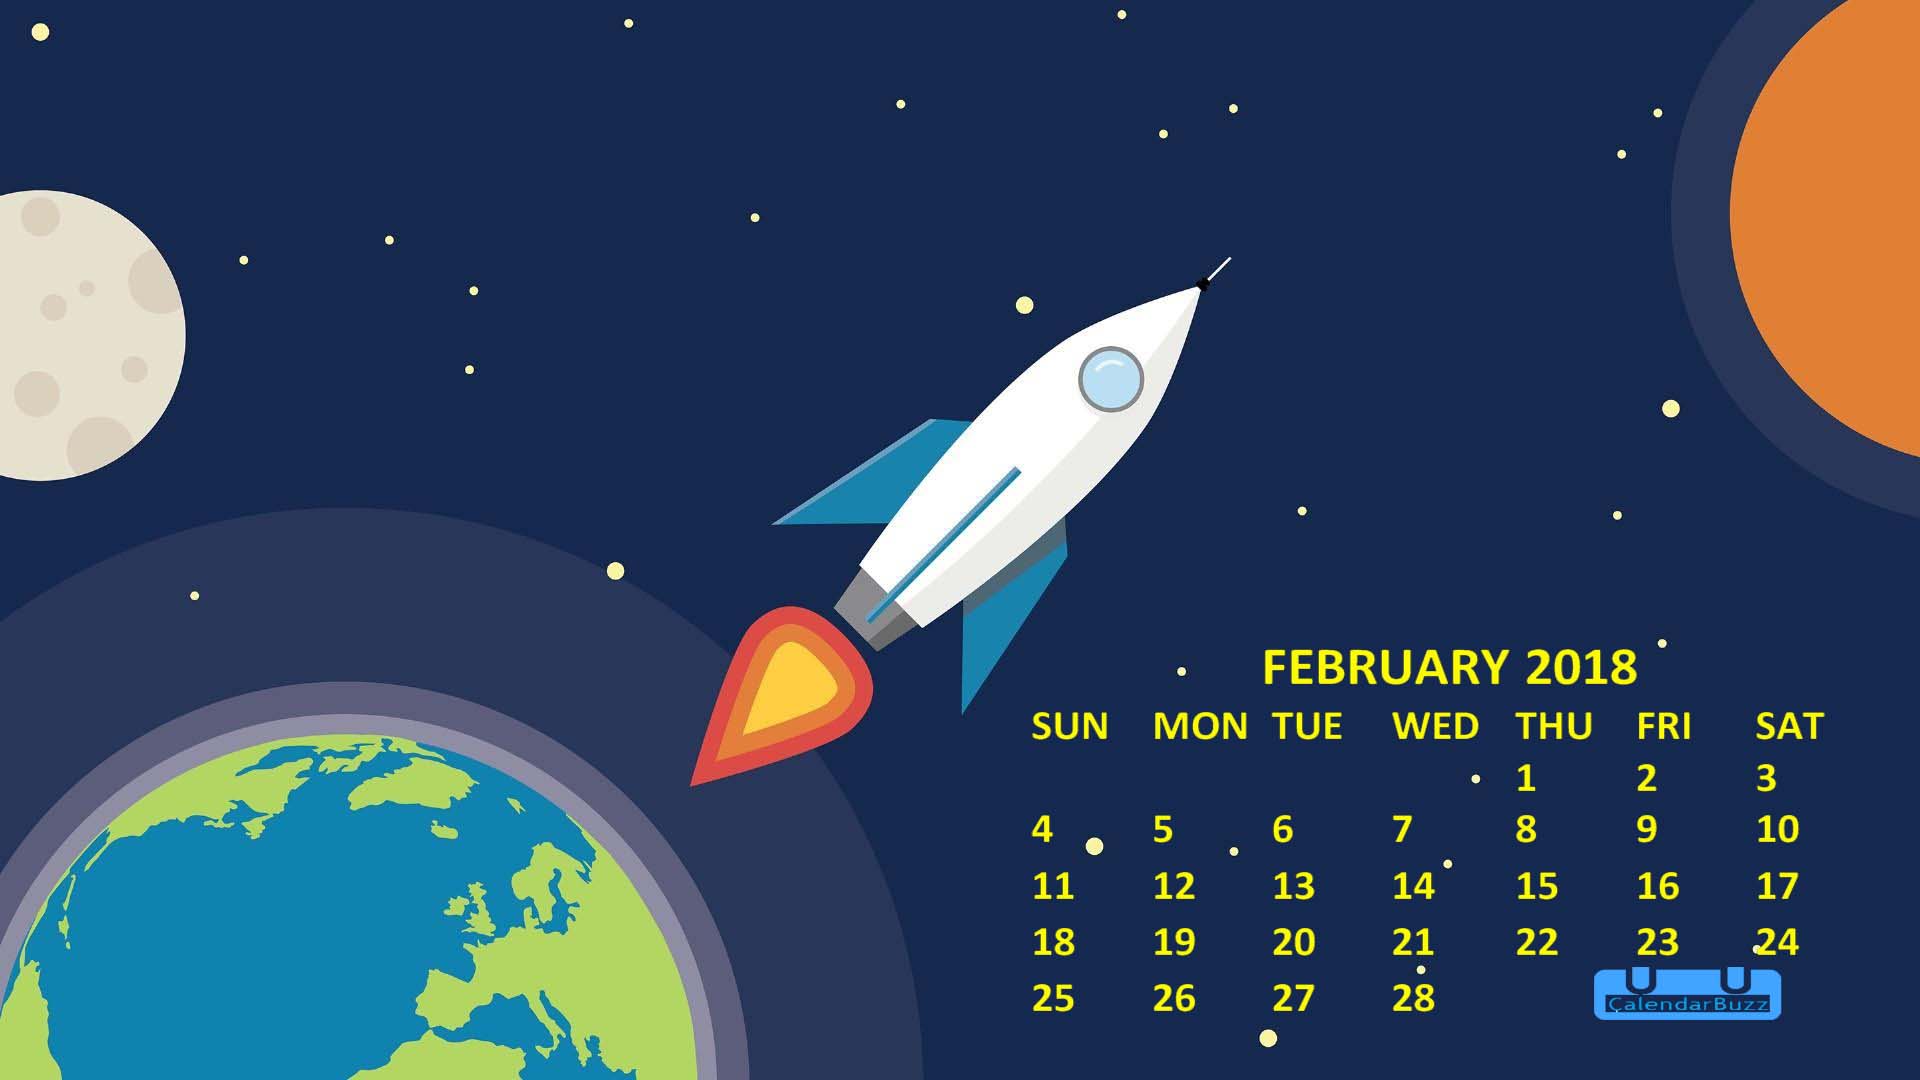 February Calendar Wallpaper Calendarbuzz